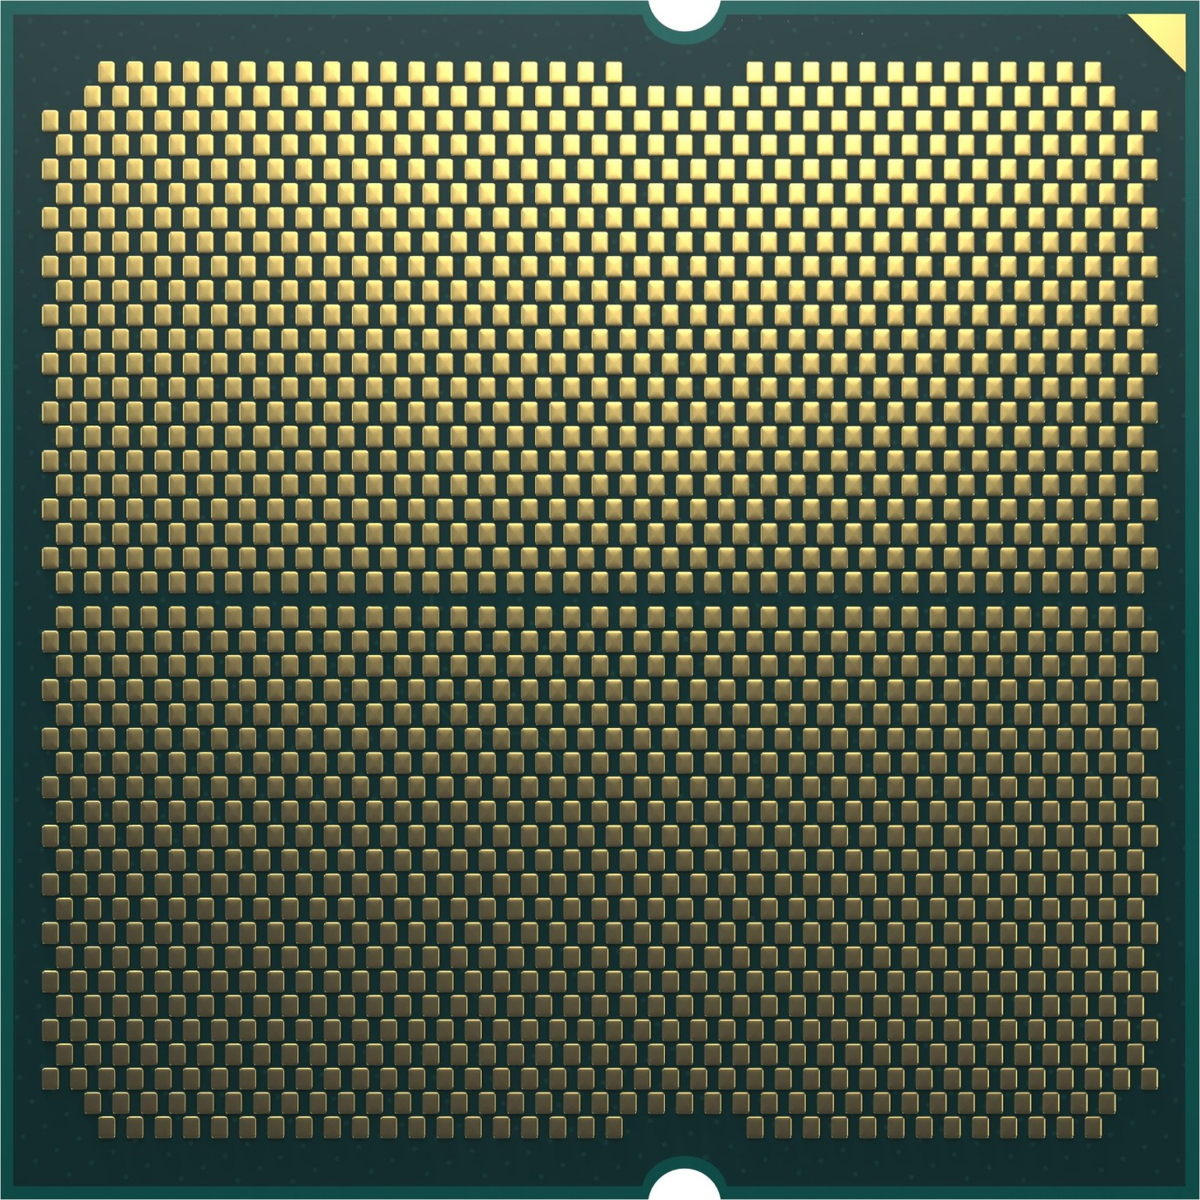 AMD Prozessor, 7900X3D Schwarz Ryzen 9